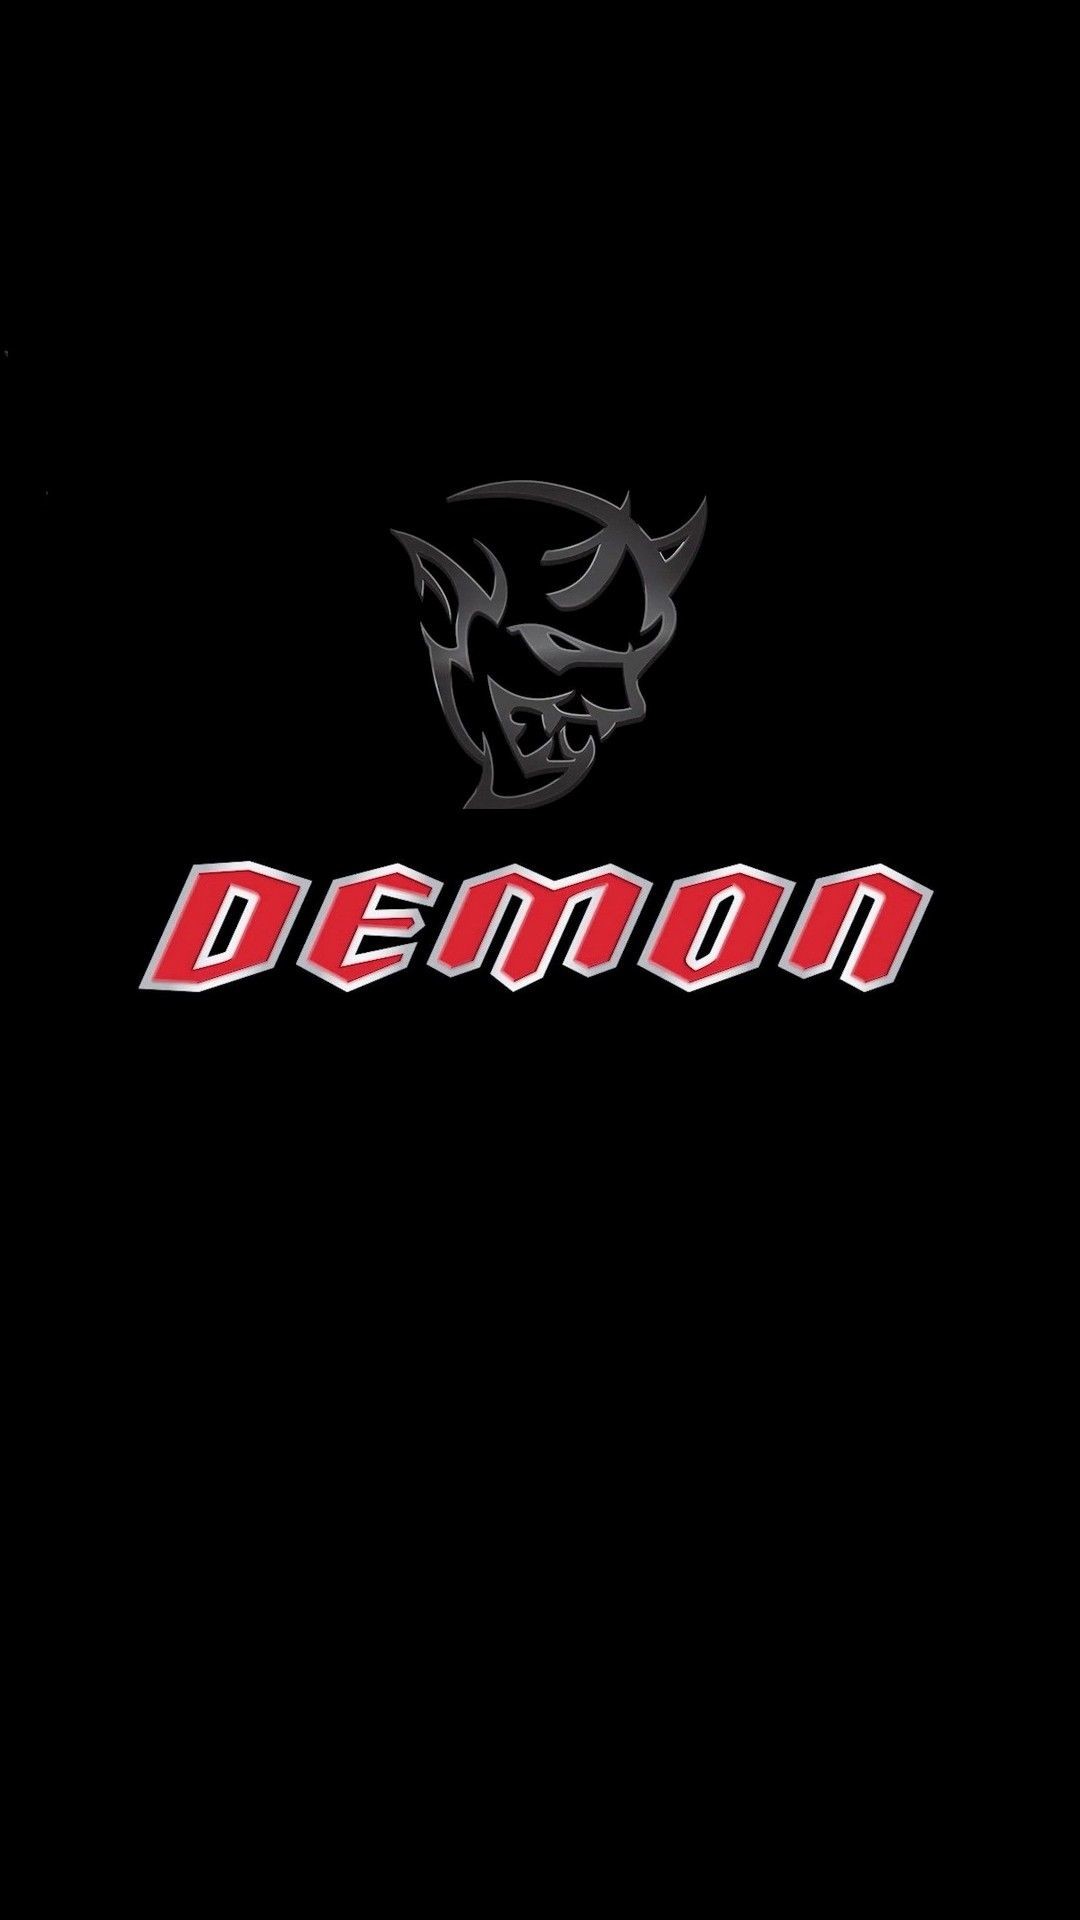 1080x1920 Dodge Demon Logo iPhone Wallpaper - Best iPhone Wallpaper